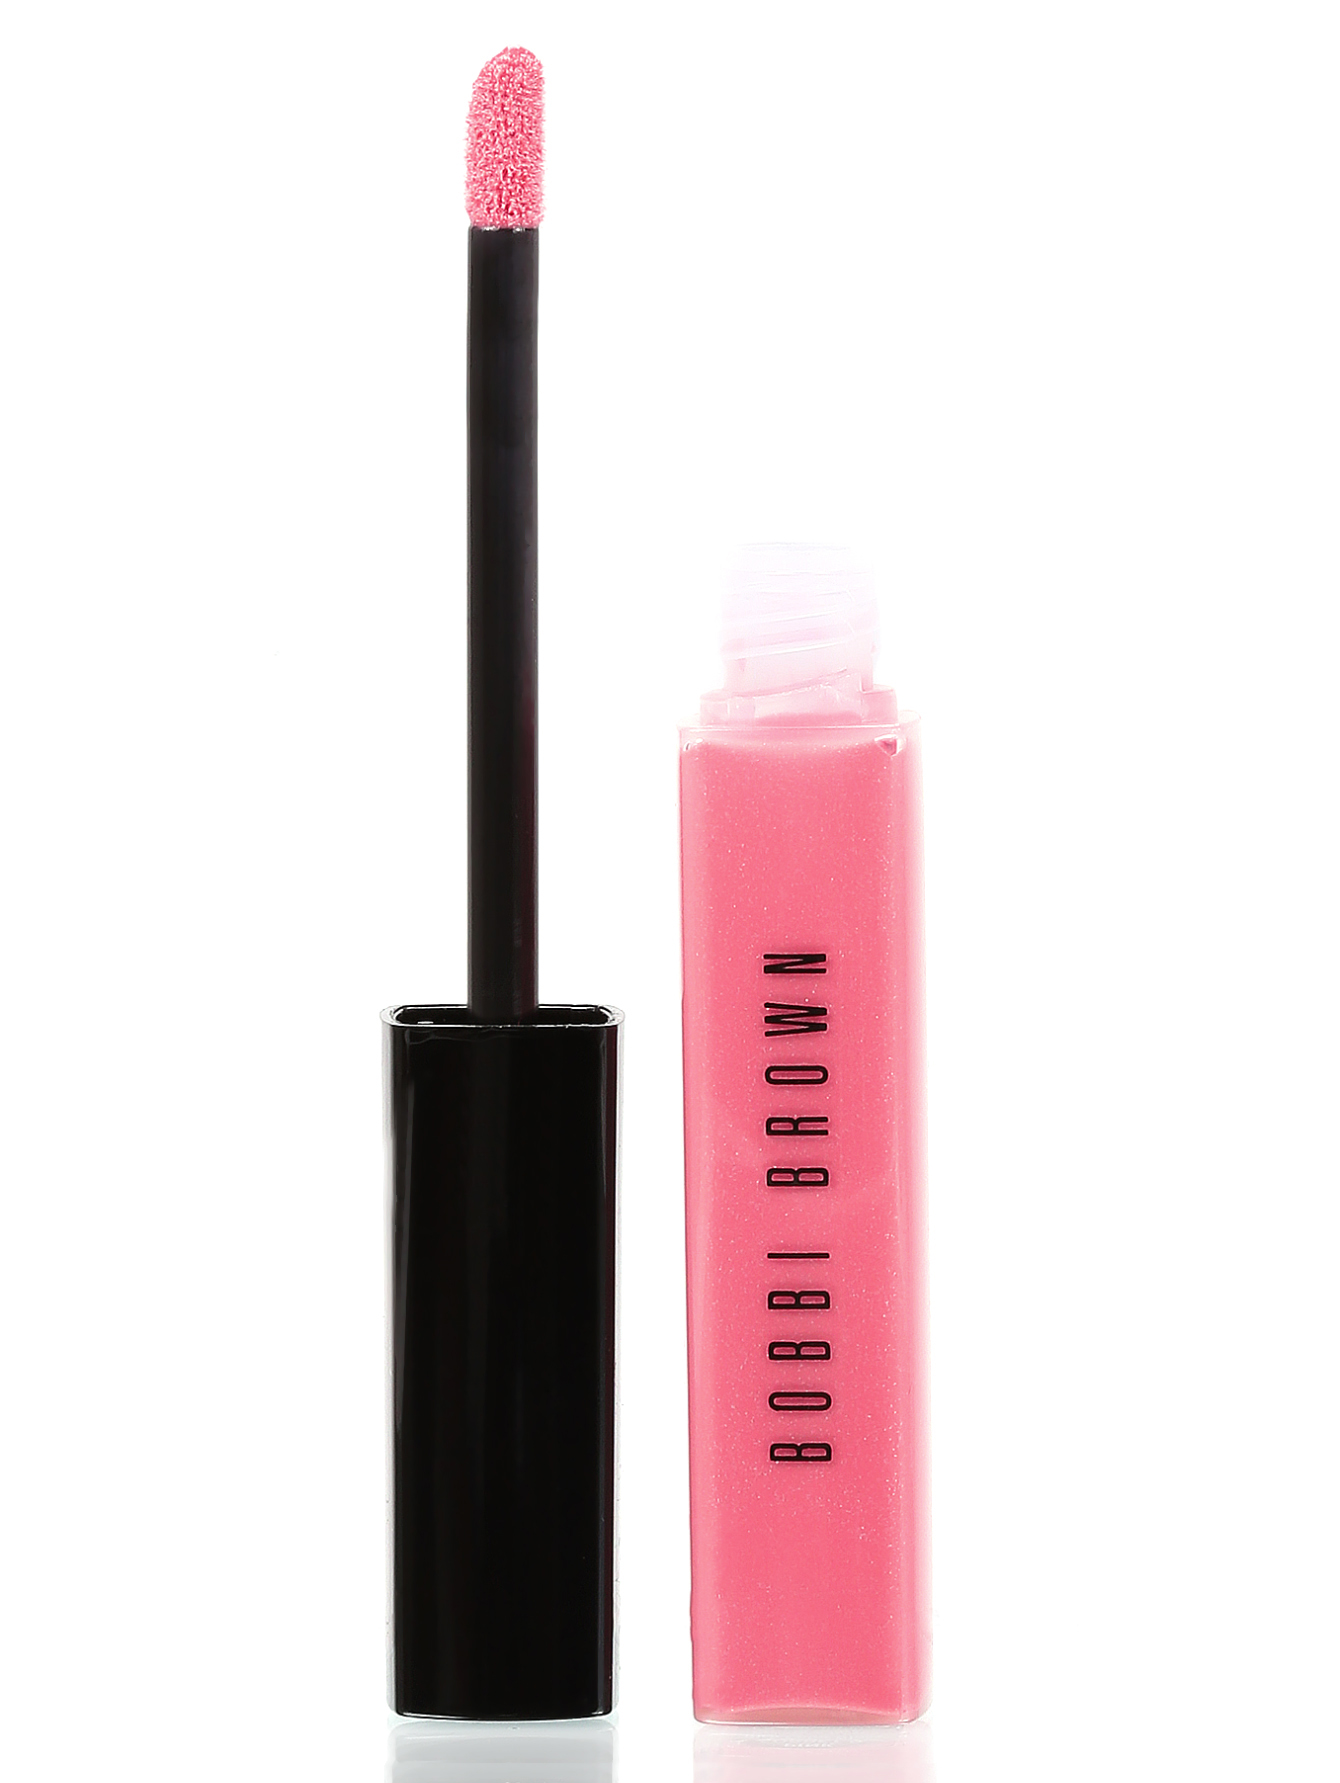 Блеск для губ - Pink tulle, Lip gloss - Модель Верх-Низ